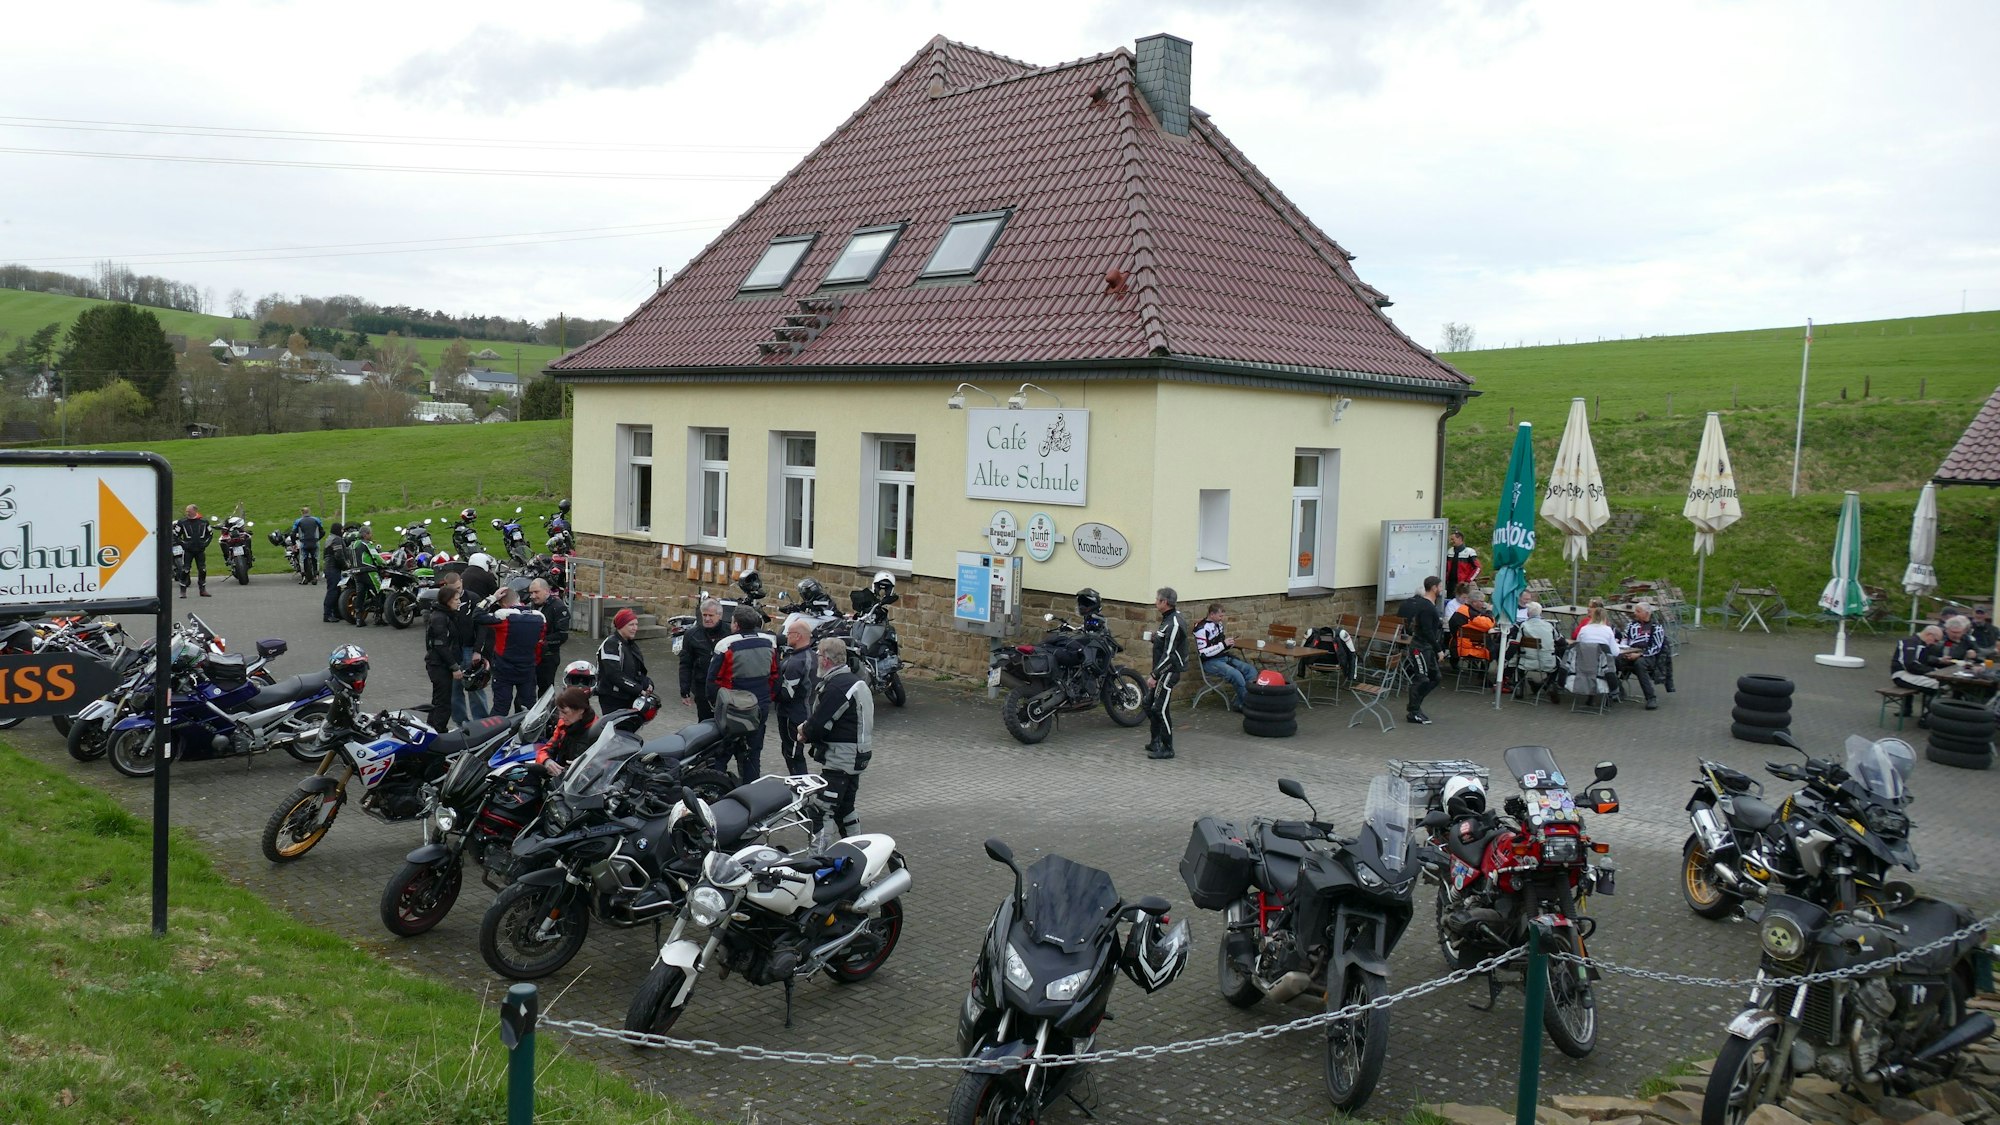 Viele Motorräder stehen auf dem Parkplatz vor einer Gaststätte.